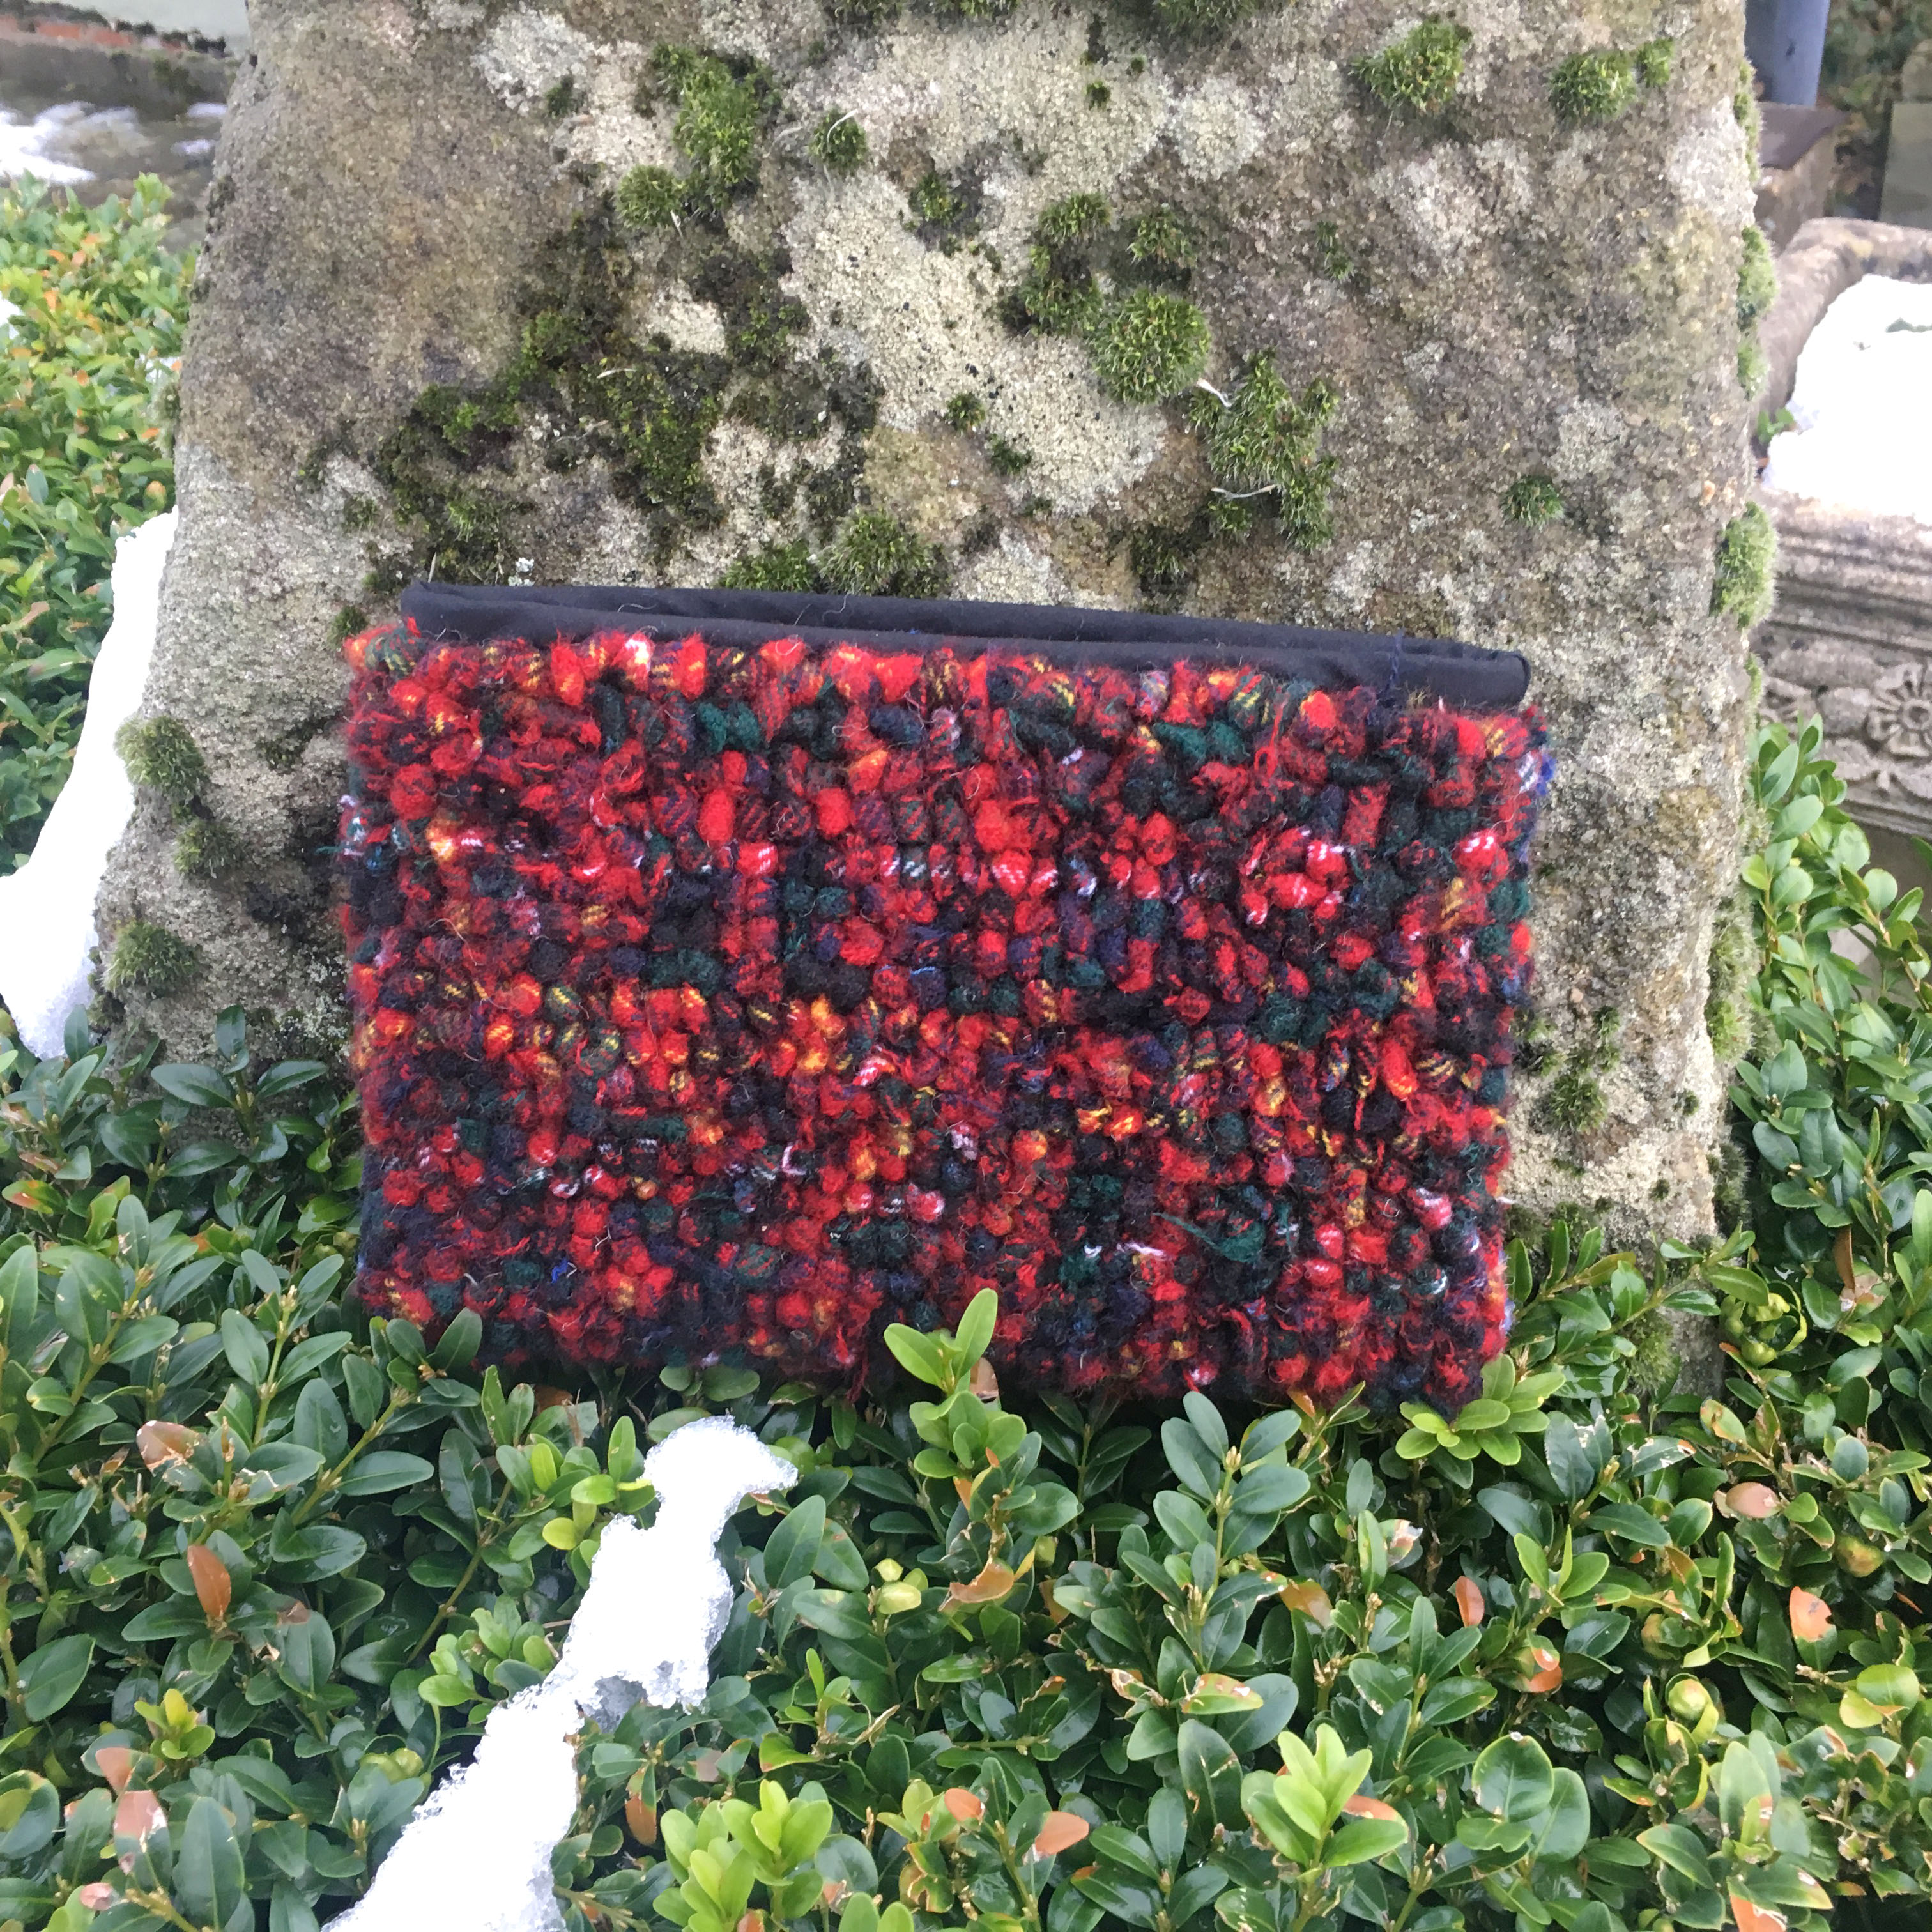 Red tartan loopy rag rugged clutch bag